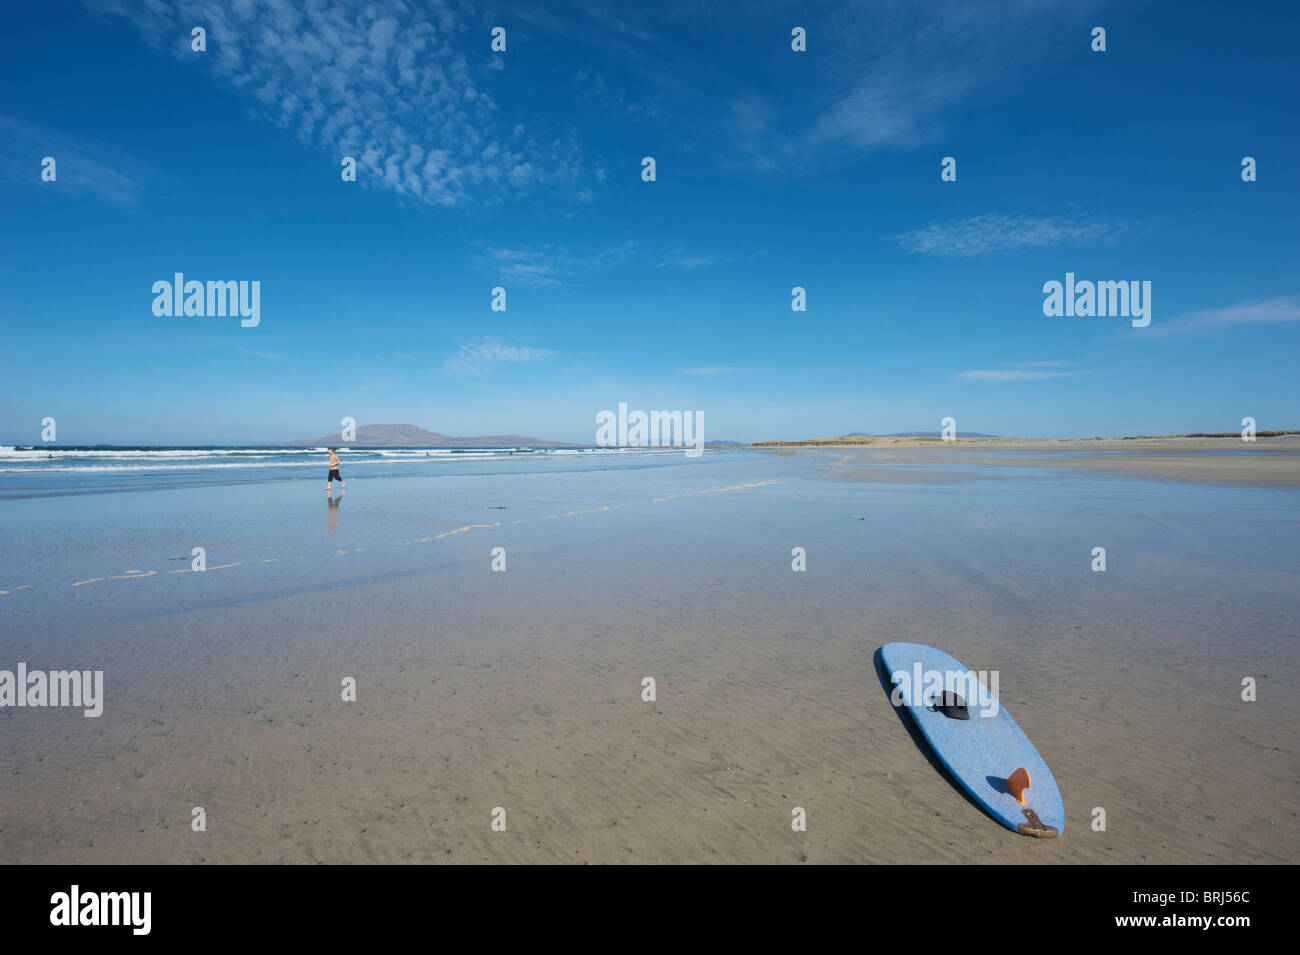 A surfboard on the beach at Carrowniskey, Co. Mayo, Ireland Stock Photo